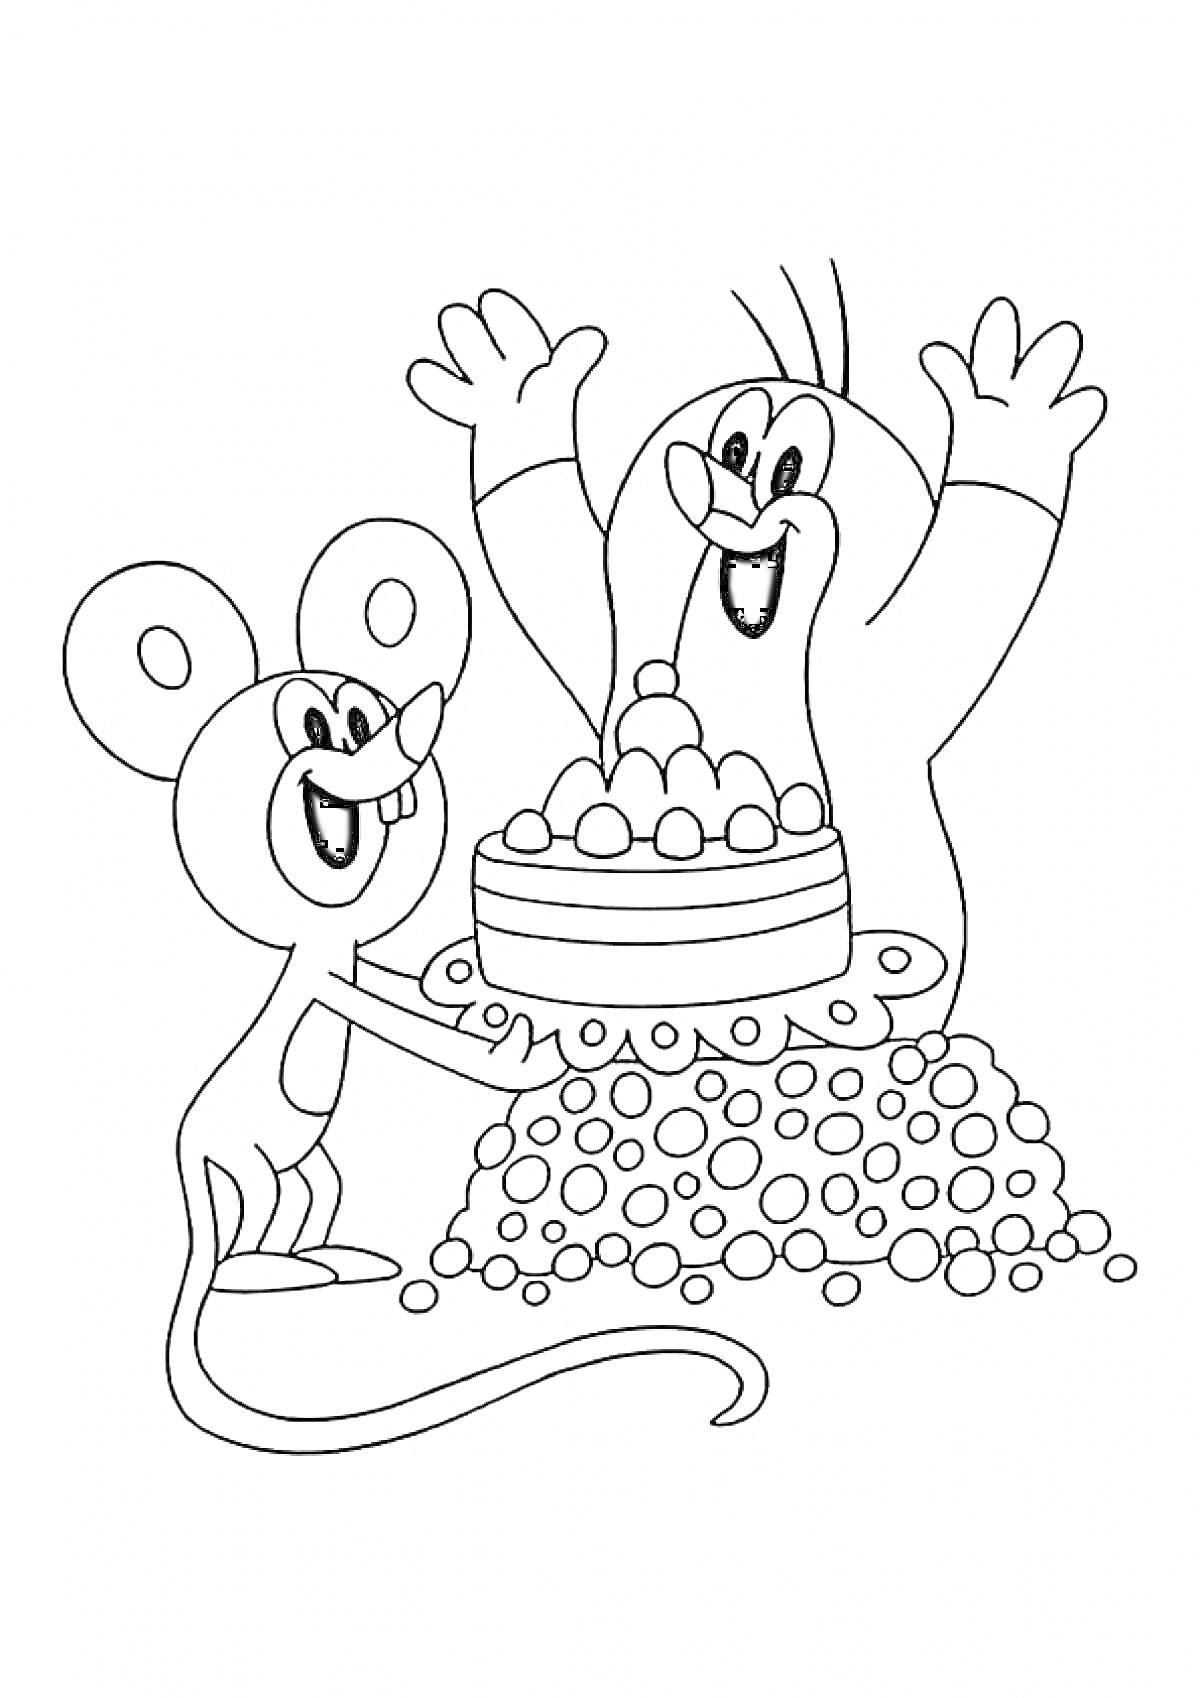 Раскраска Крот и мышь с тортом на фоне россыпи камней